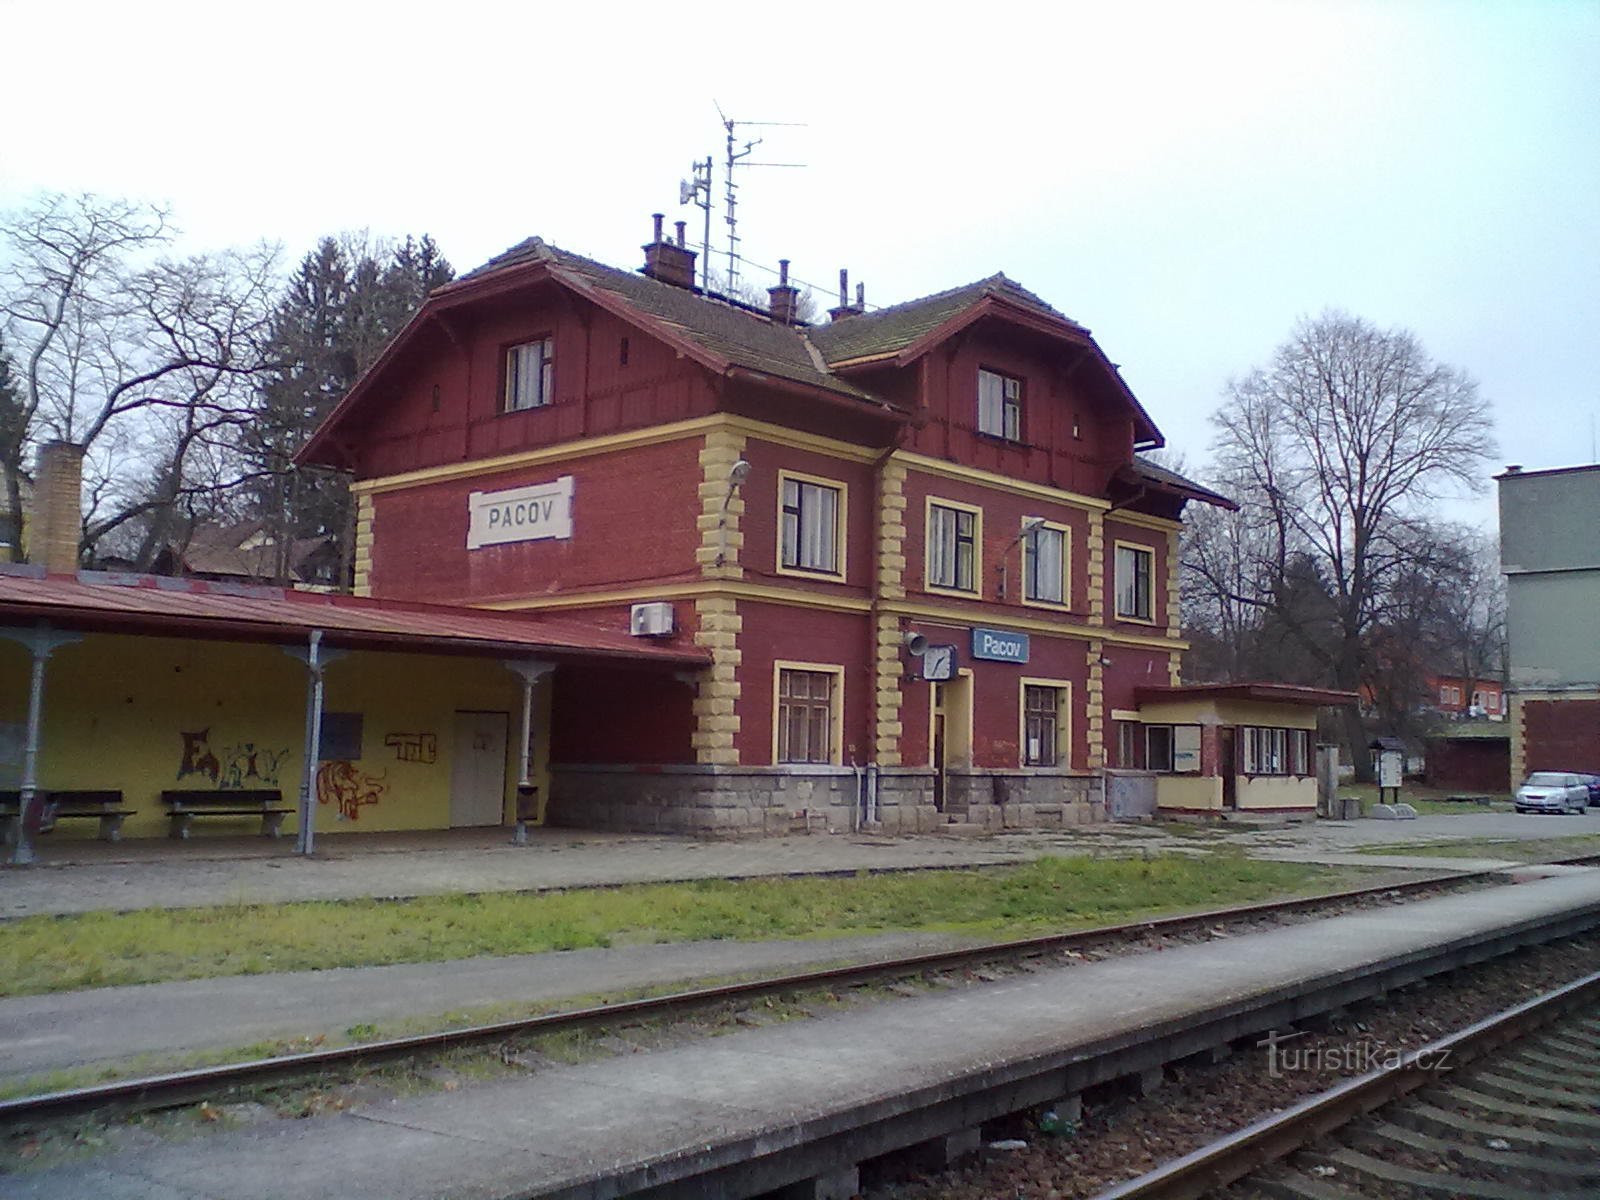 1. järnvägsstation i Pacov - start- och slutpunkt för pilgrimsfärden.